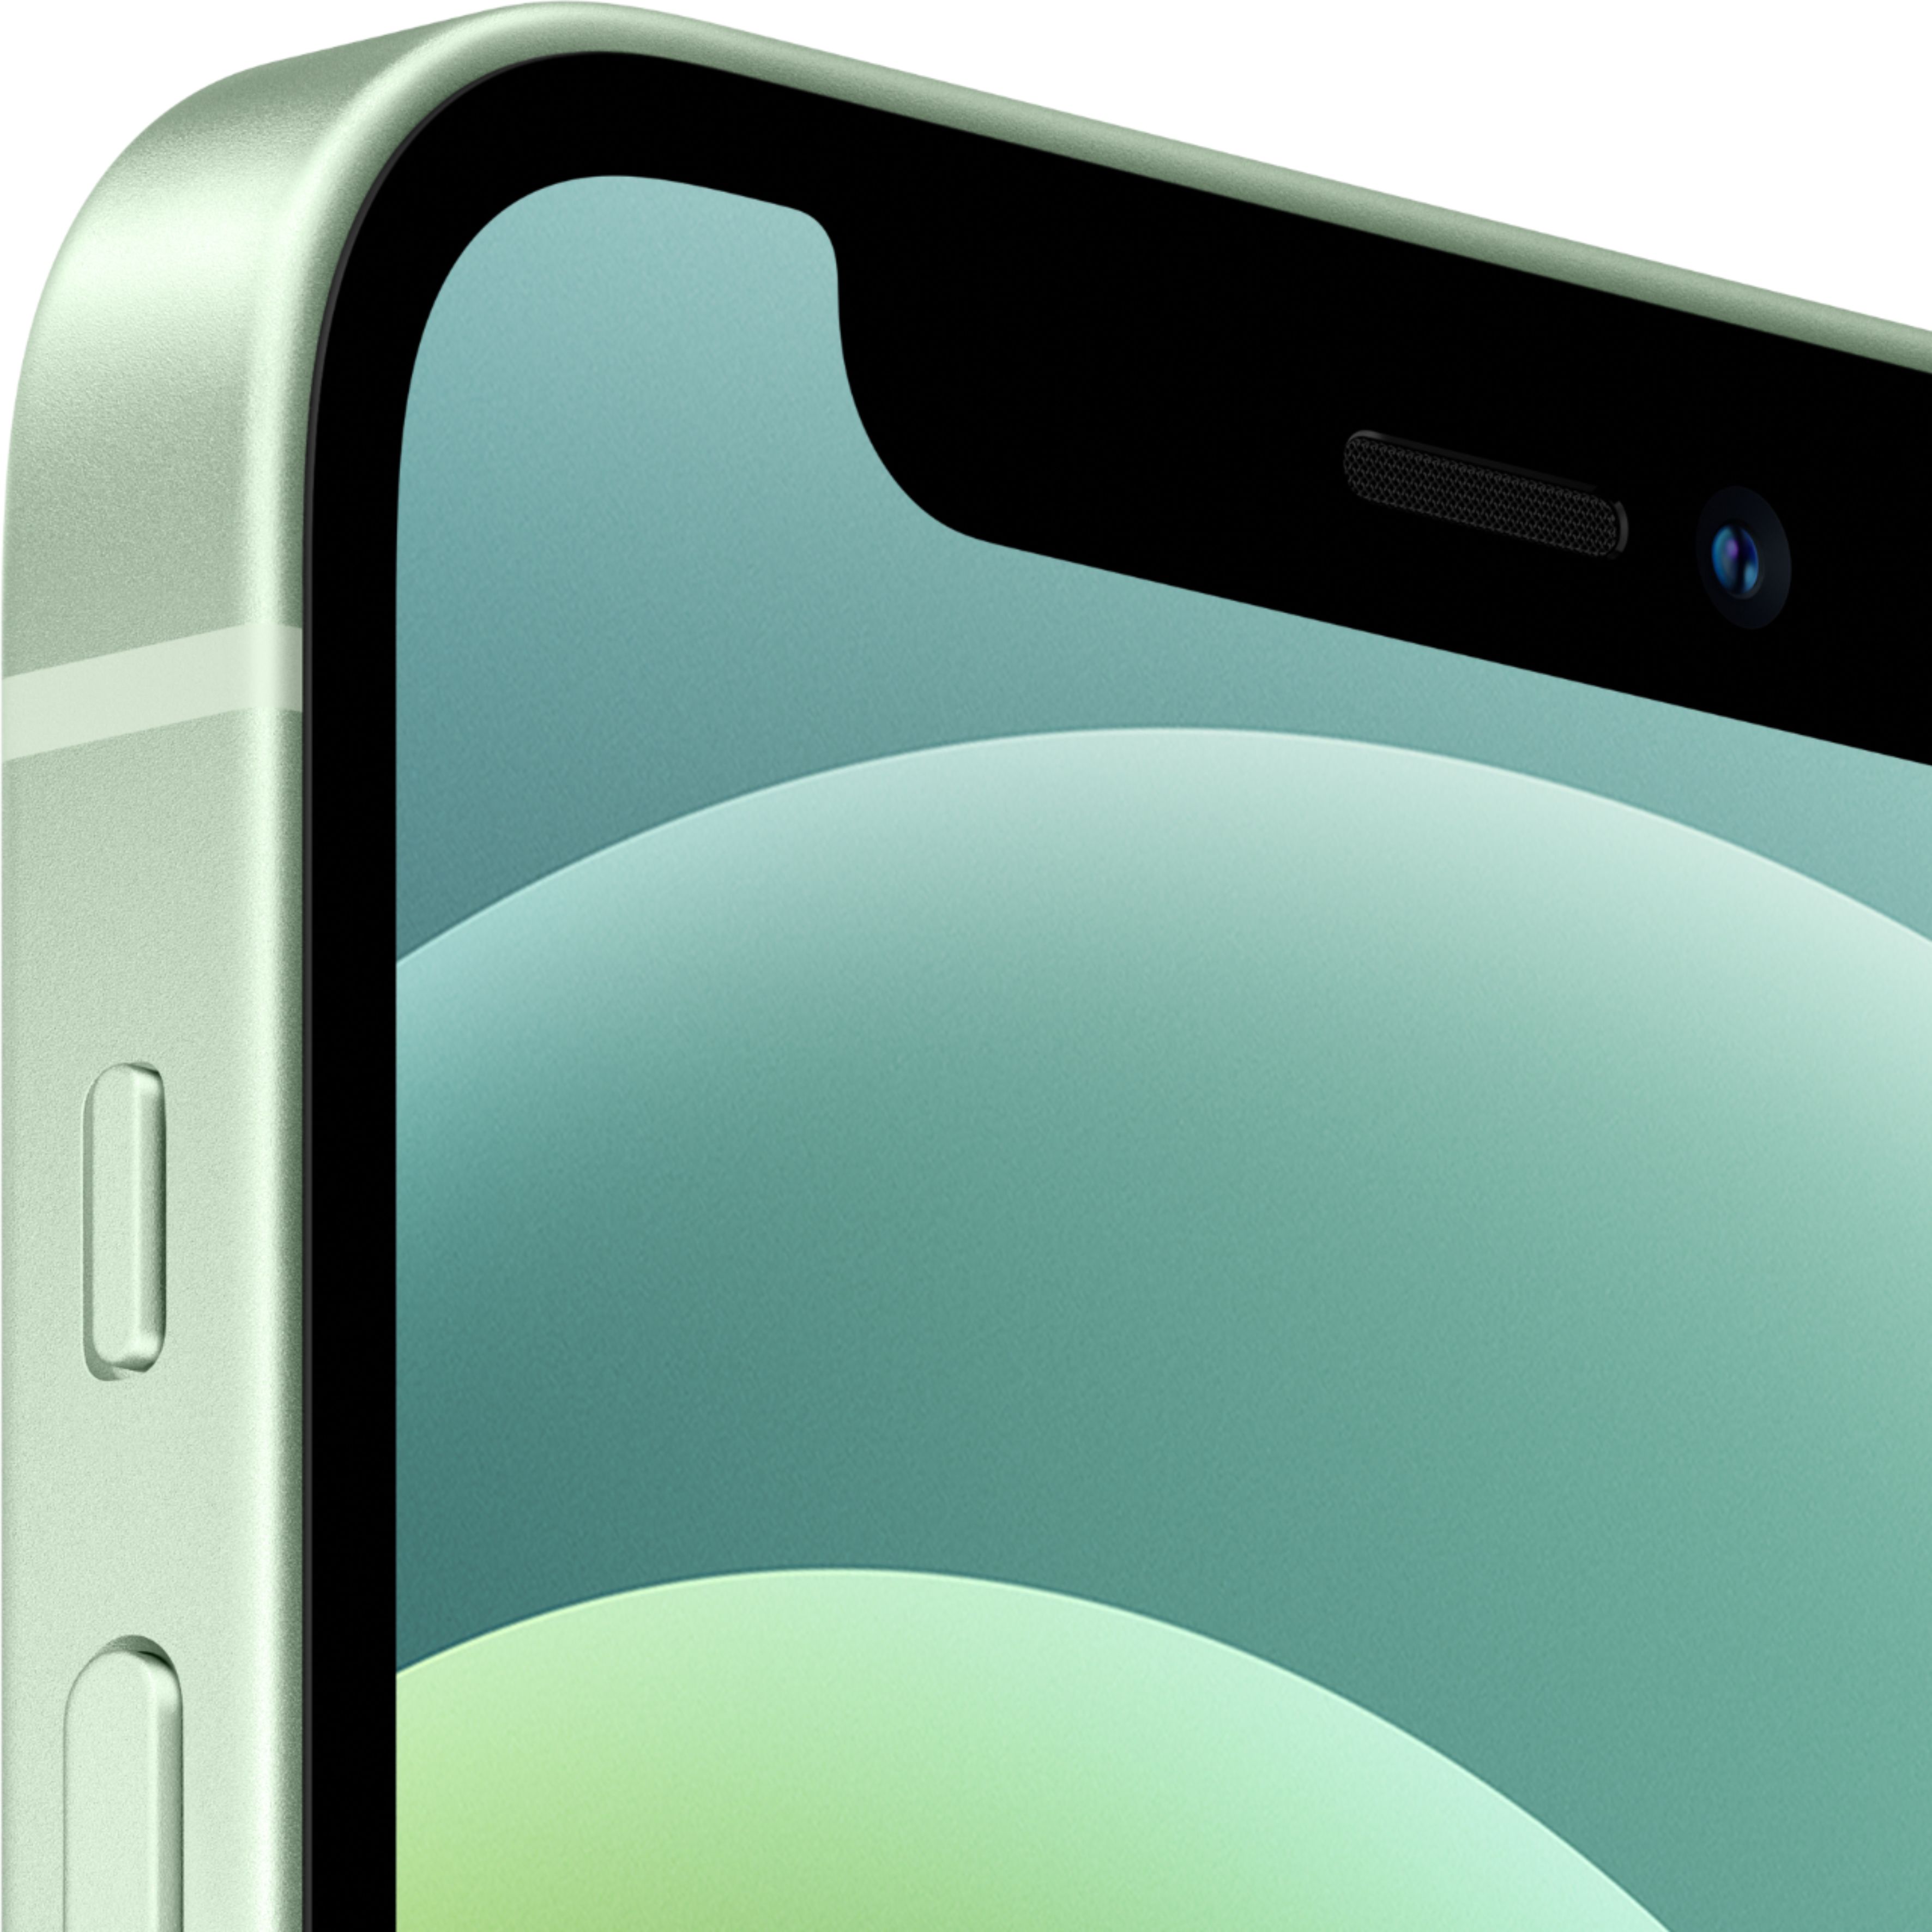 Apple Iphone 12 Mini 5g 128gb Green At T Mg8q3ll A Best Buy